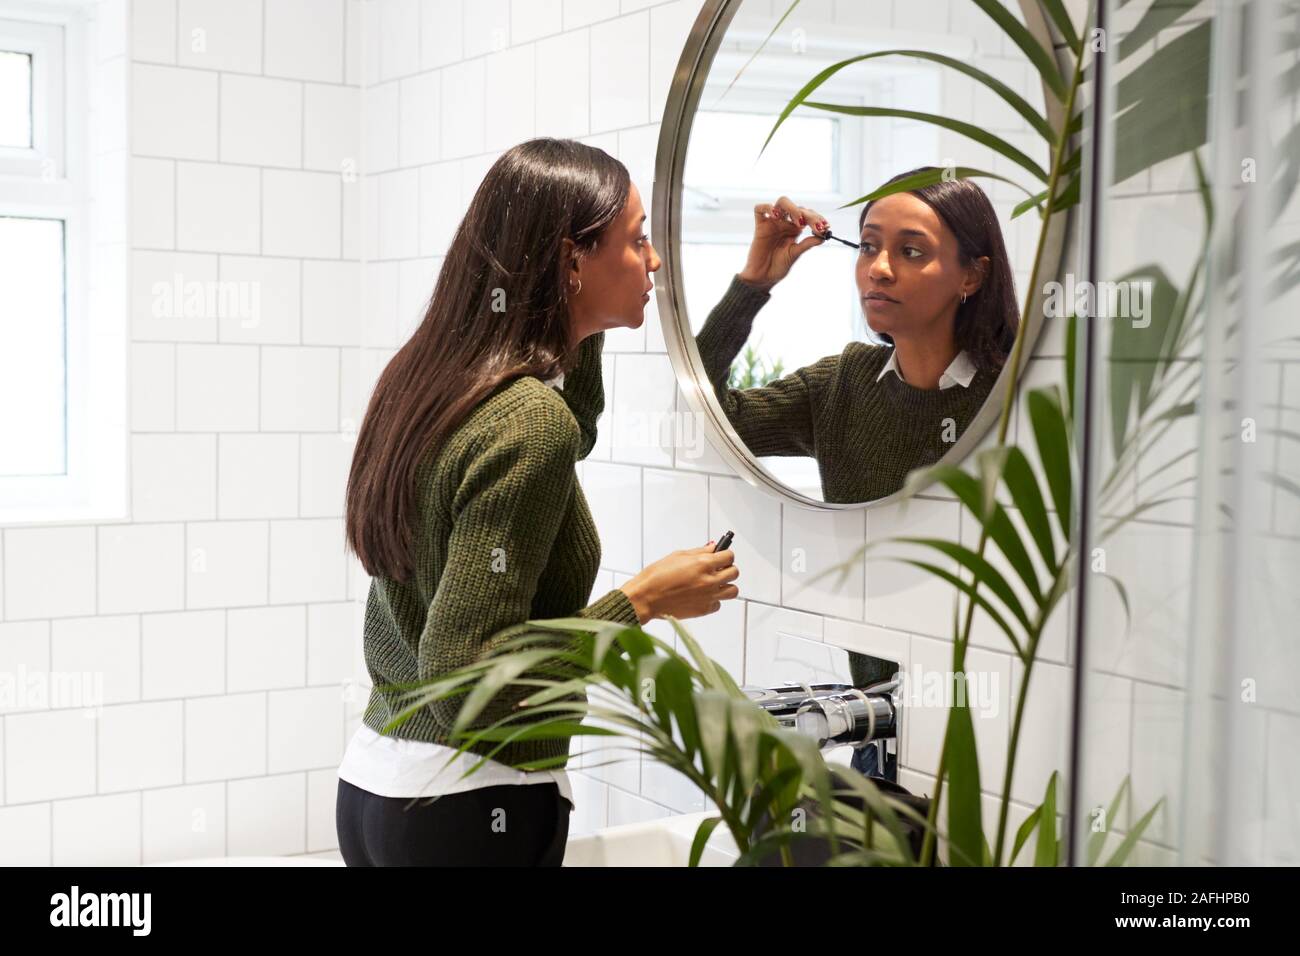 Businesswoman At Home mise sur composent en miroir avant de quitter pour le travail Banque D'Images